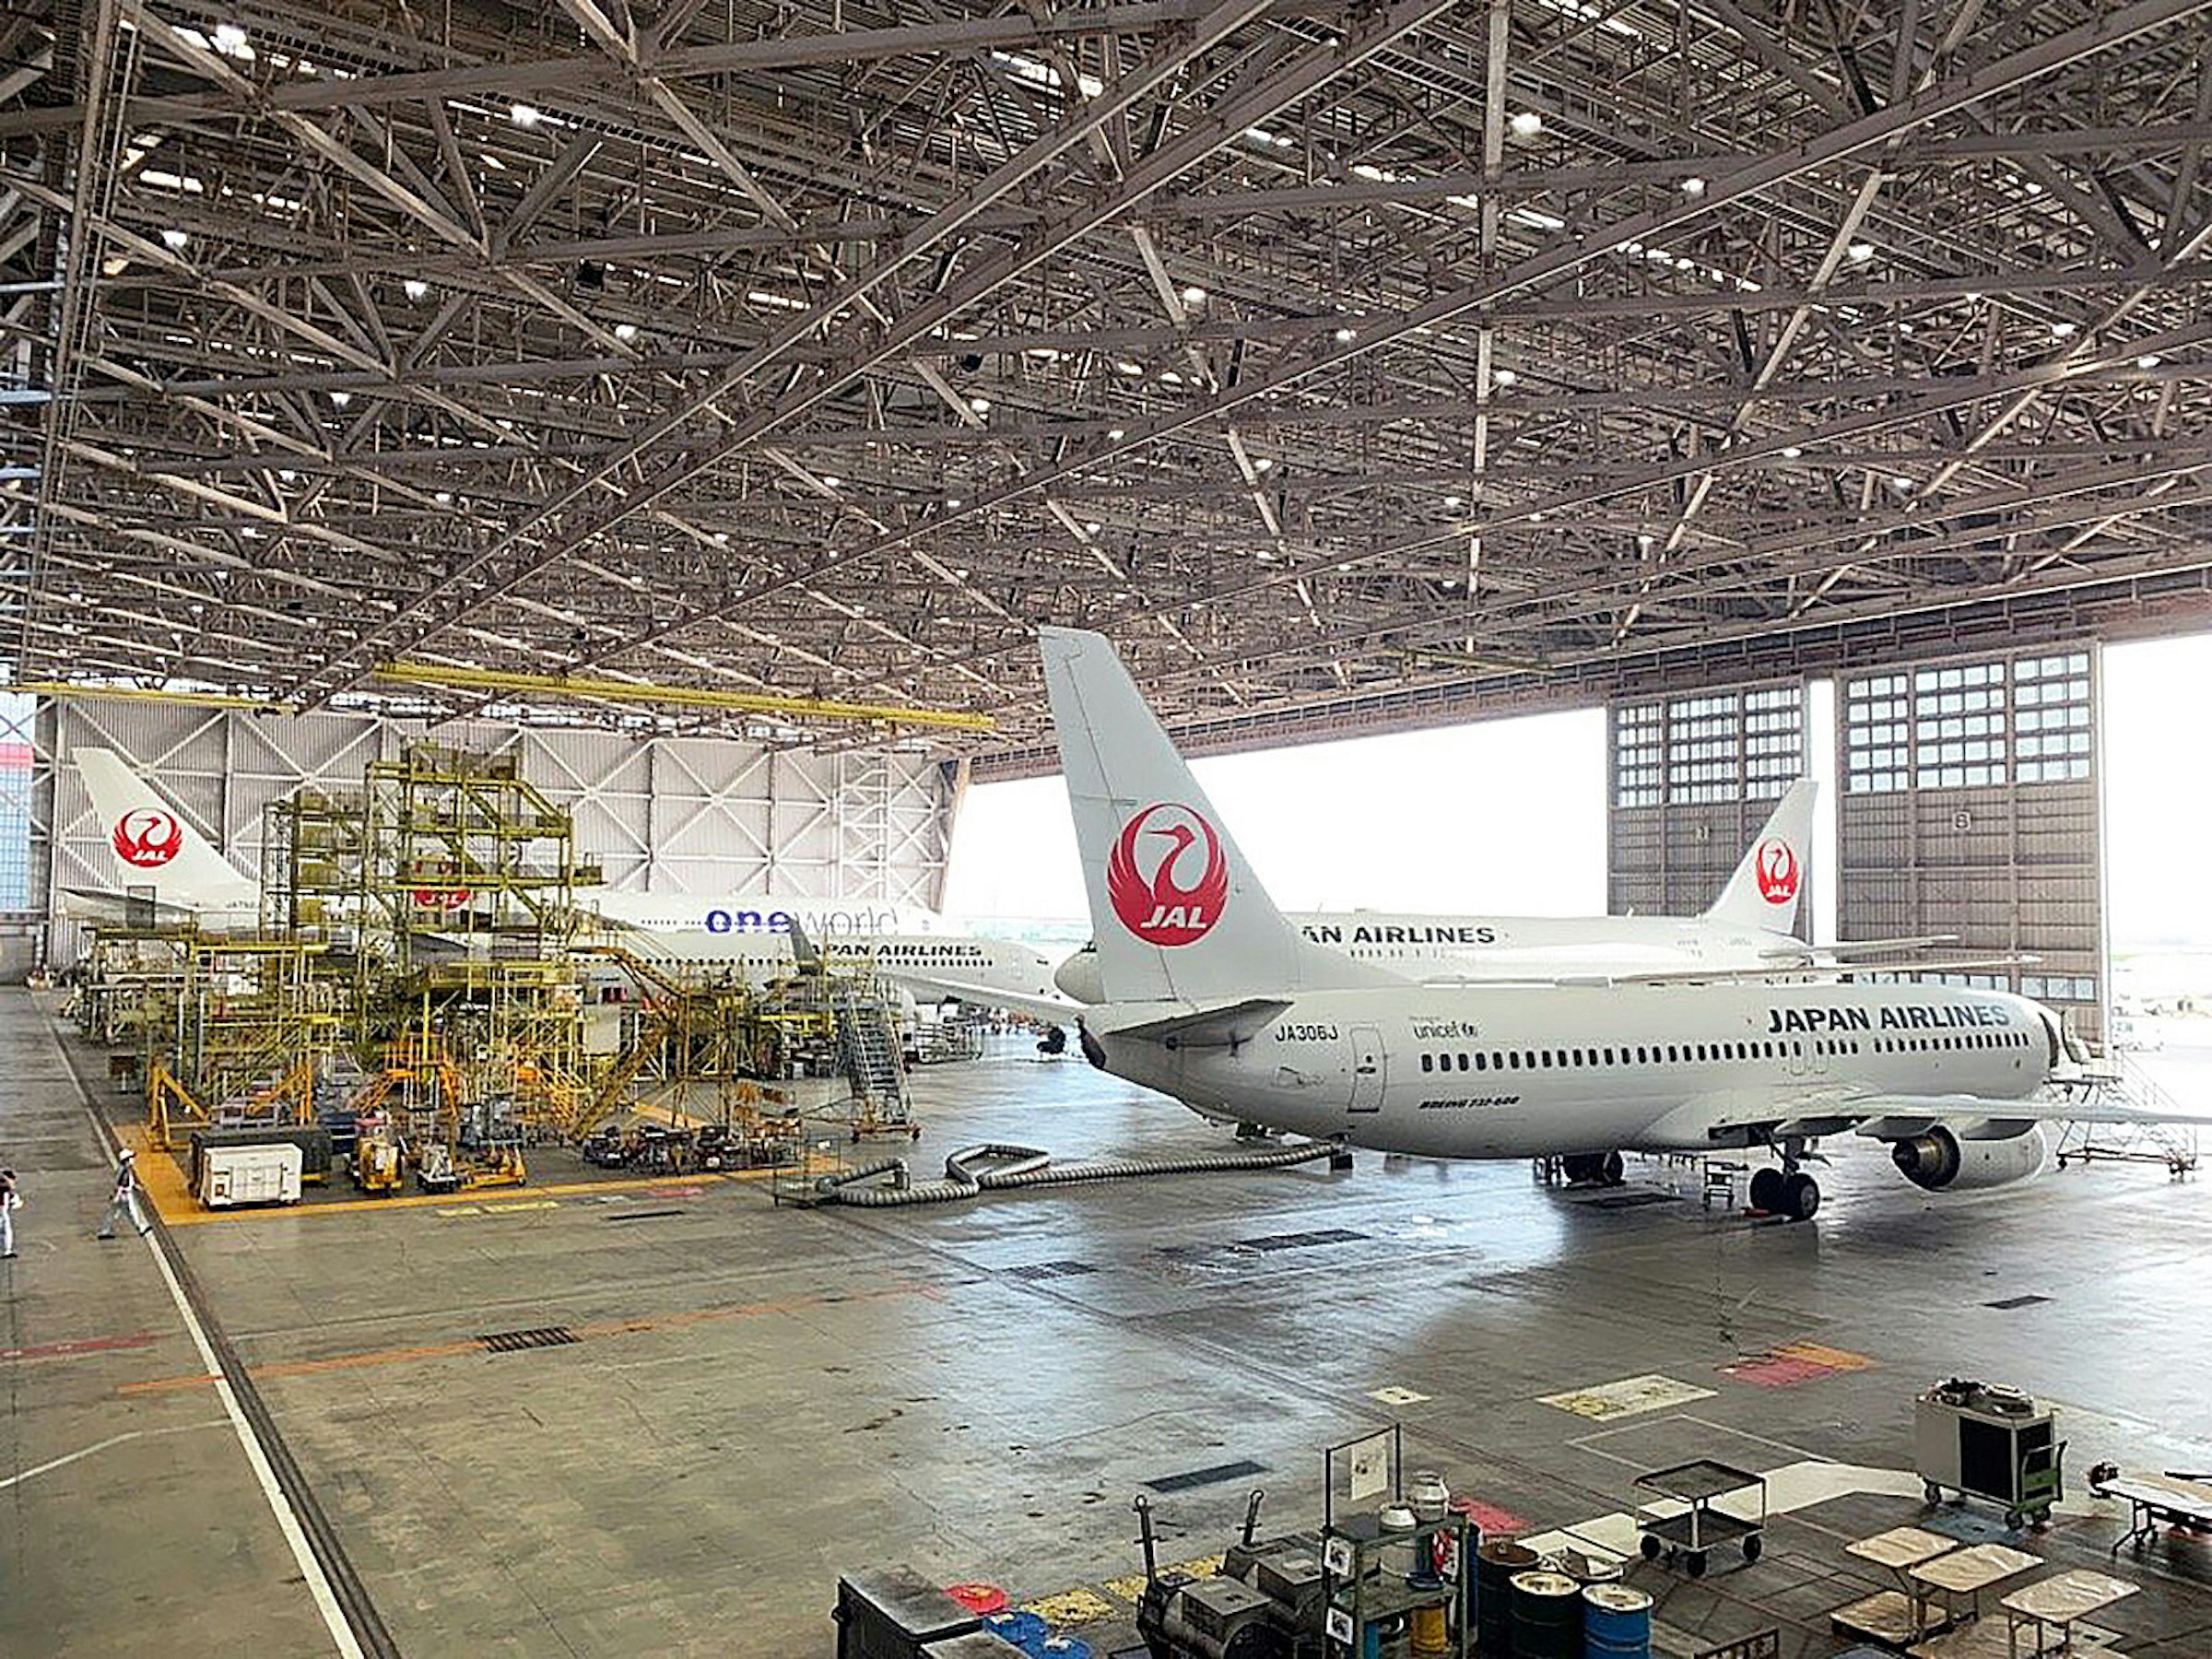 日本東京最受歡迎6大免費景點機棚佔2個第一名jal日航sky Museum你去過嗎 東京都 Cool3c